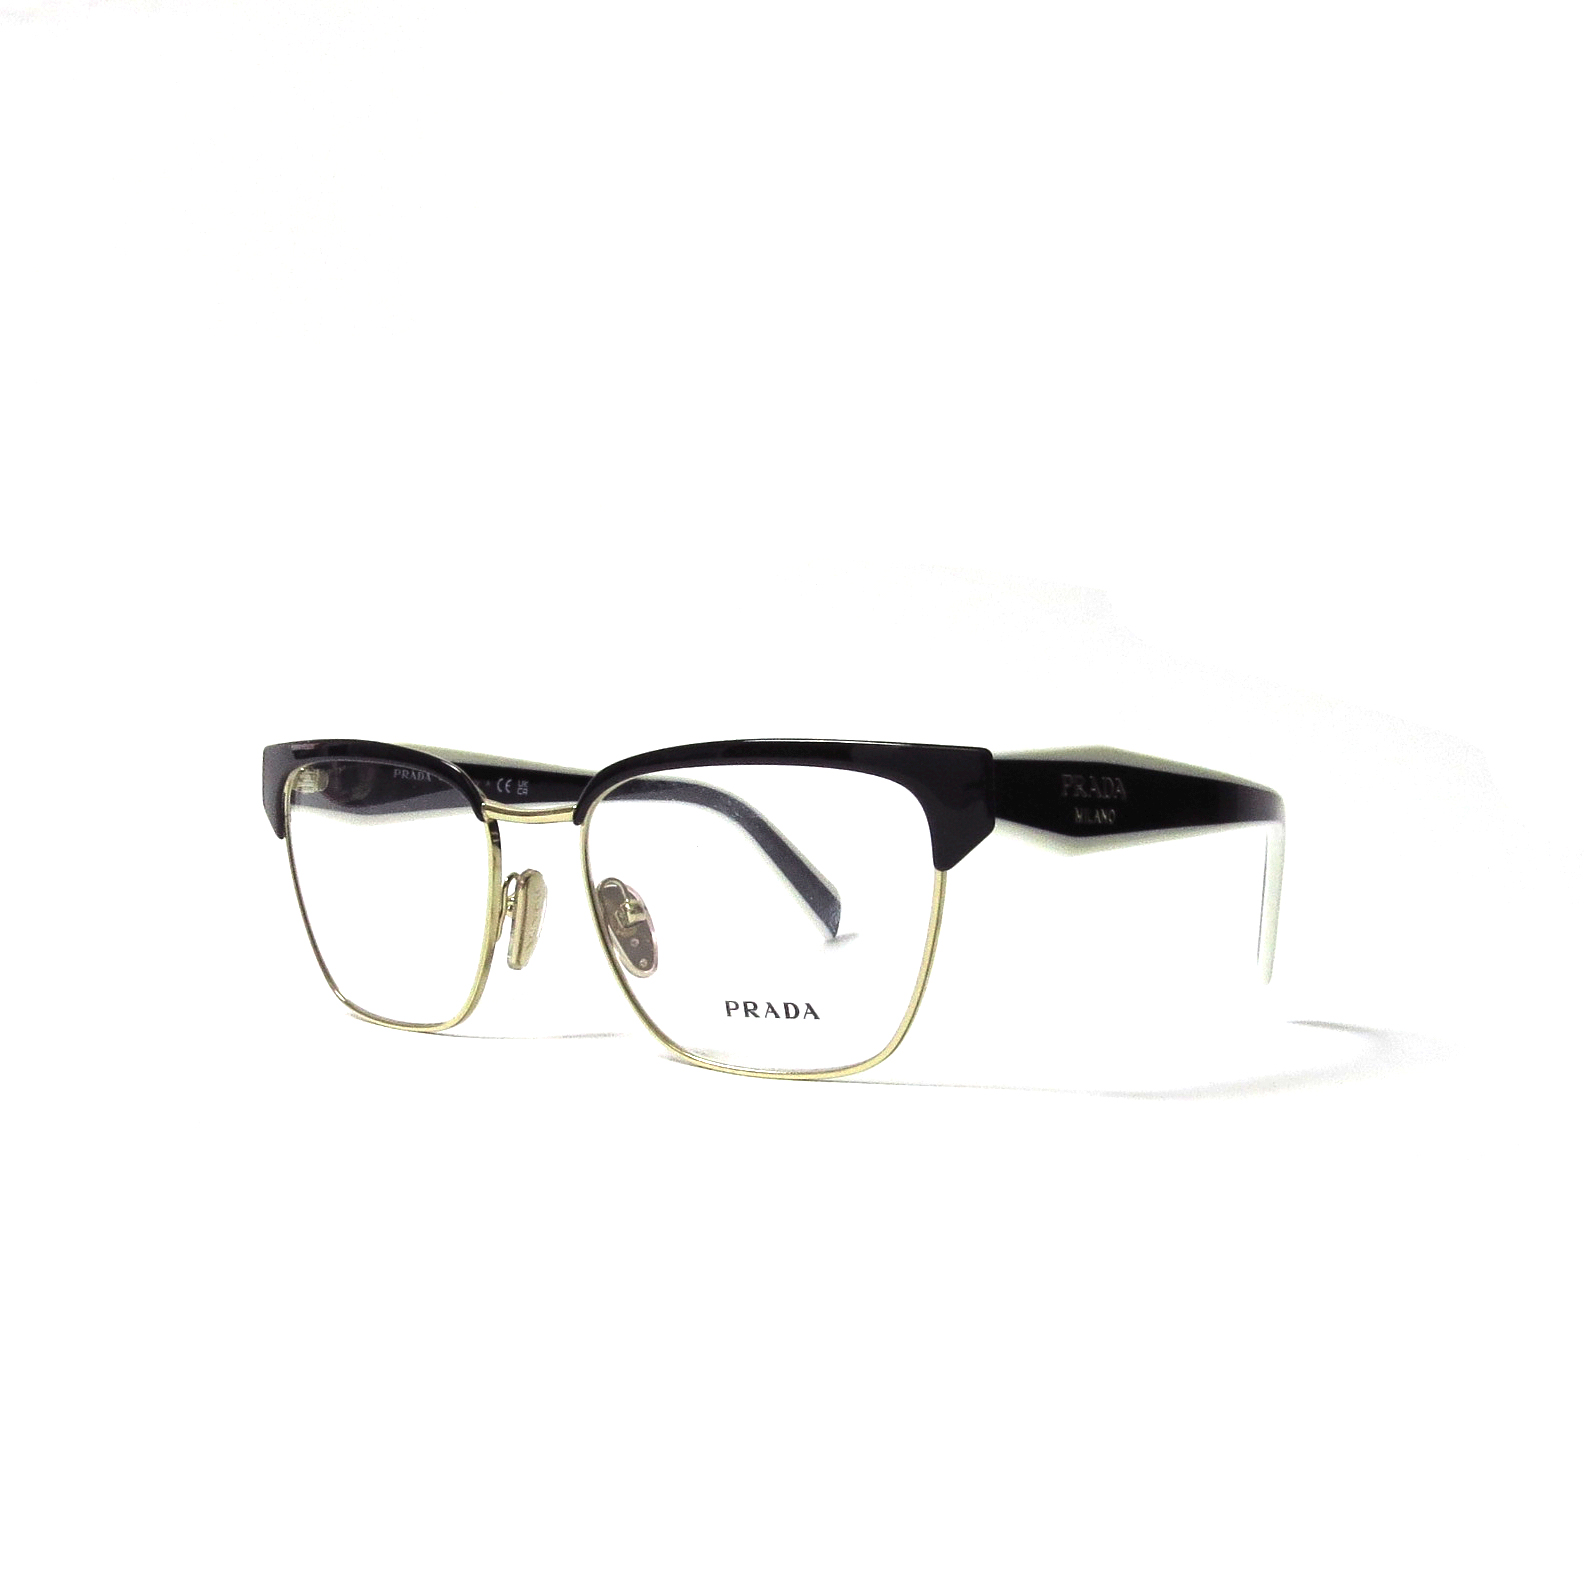 Claraboya absorción lantano Óptica las gafas | PRADA - 65VY - Óptica las gafas